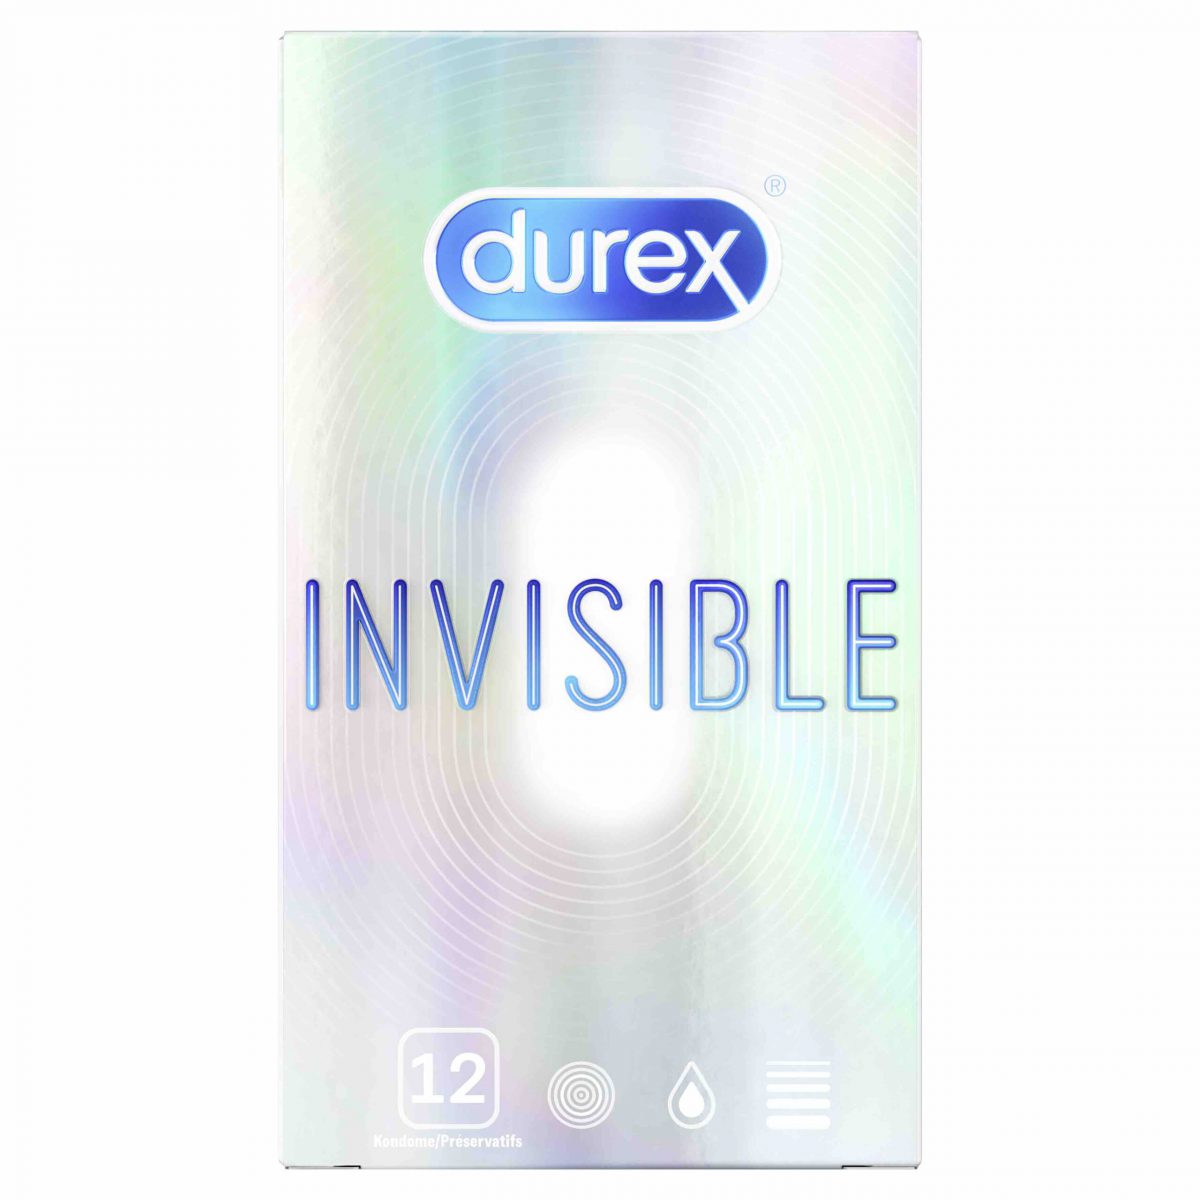 Durex Invisible 12 extra dünne und feuchte Kondome